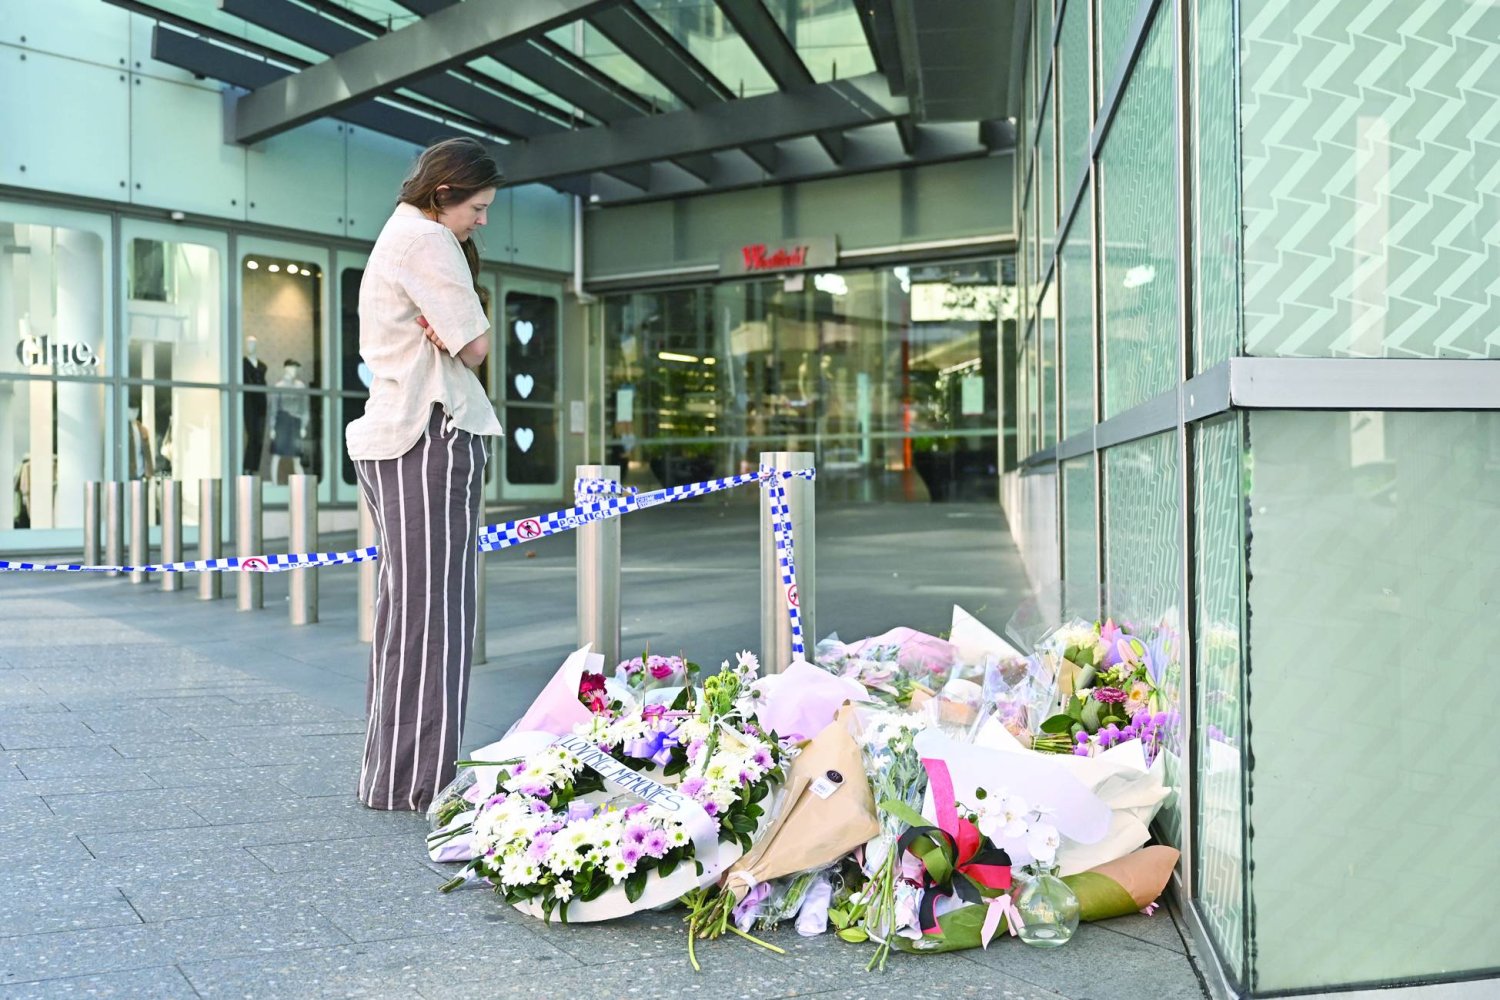 
أسترالية تنظر إلى زهور تركها مواطنون أمس تحيةً لضحايا الهجوم الذي حدث عند مدخل مركز تسوق في سيدني (أ.ب)